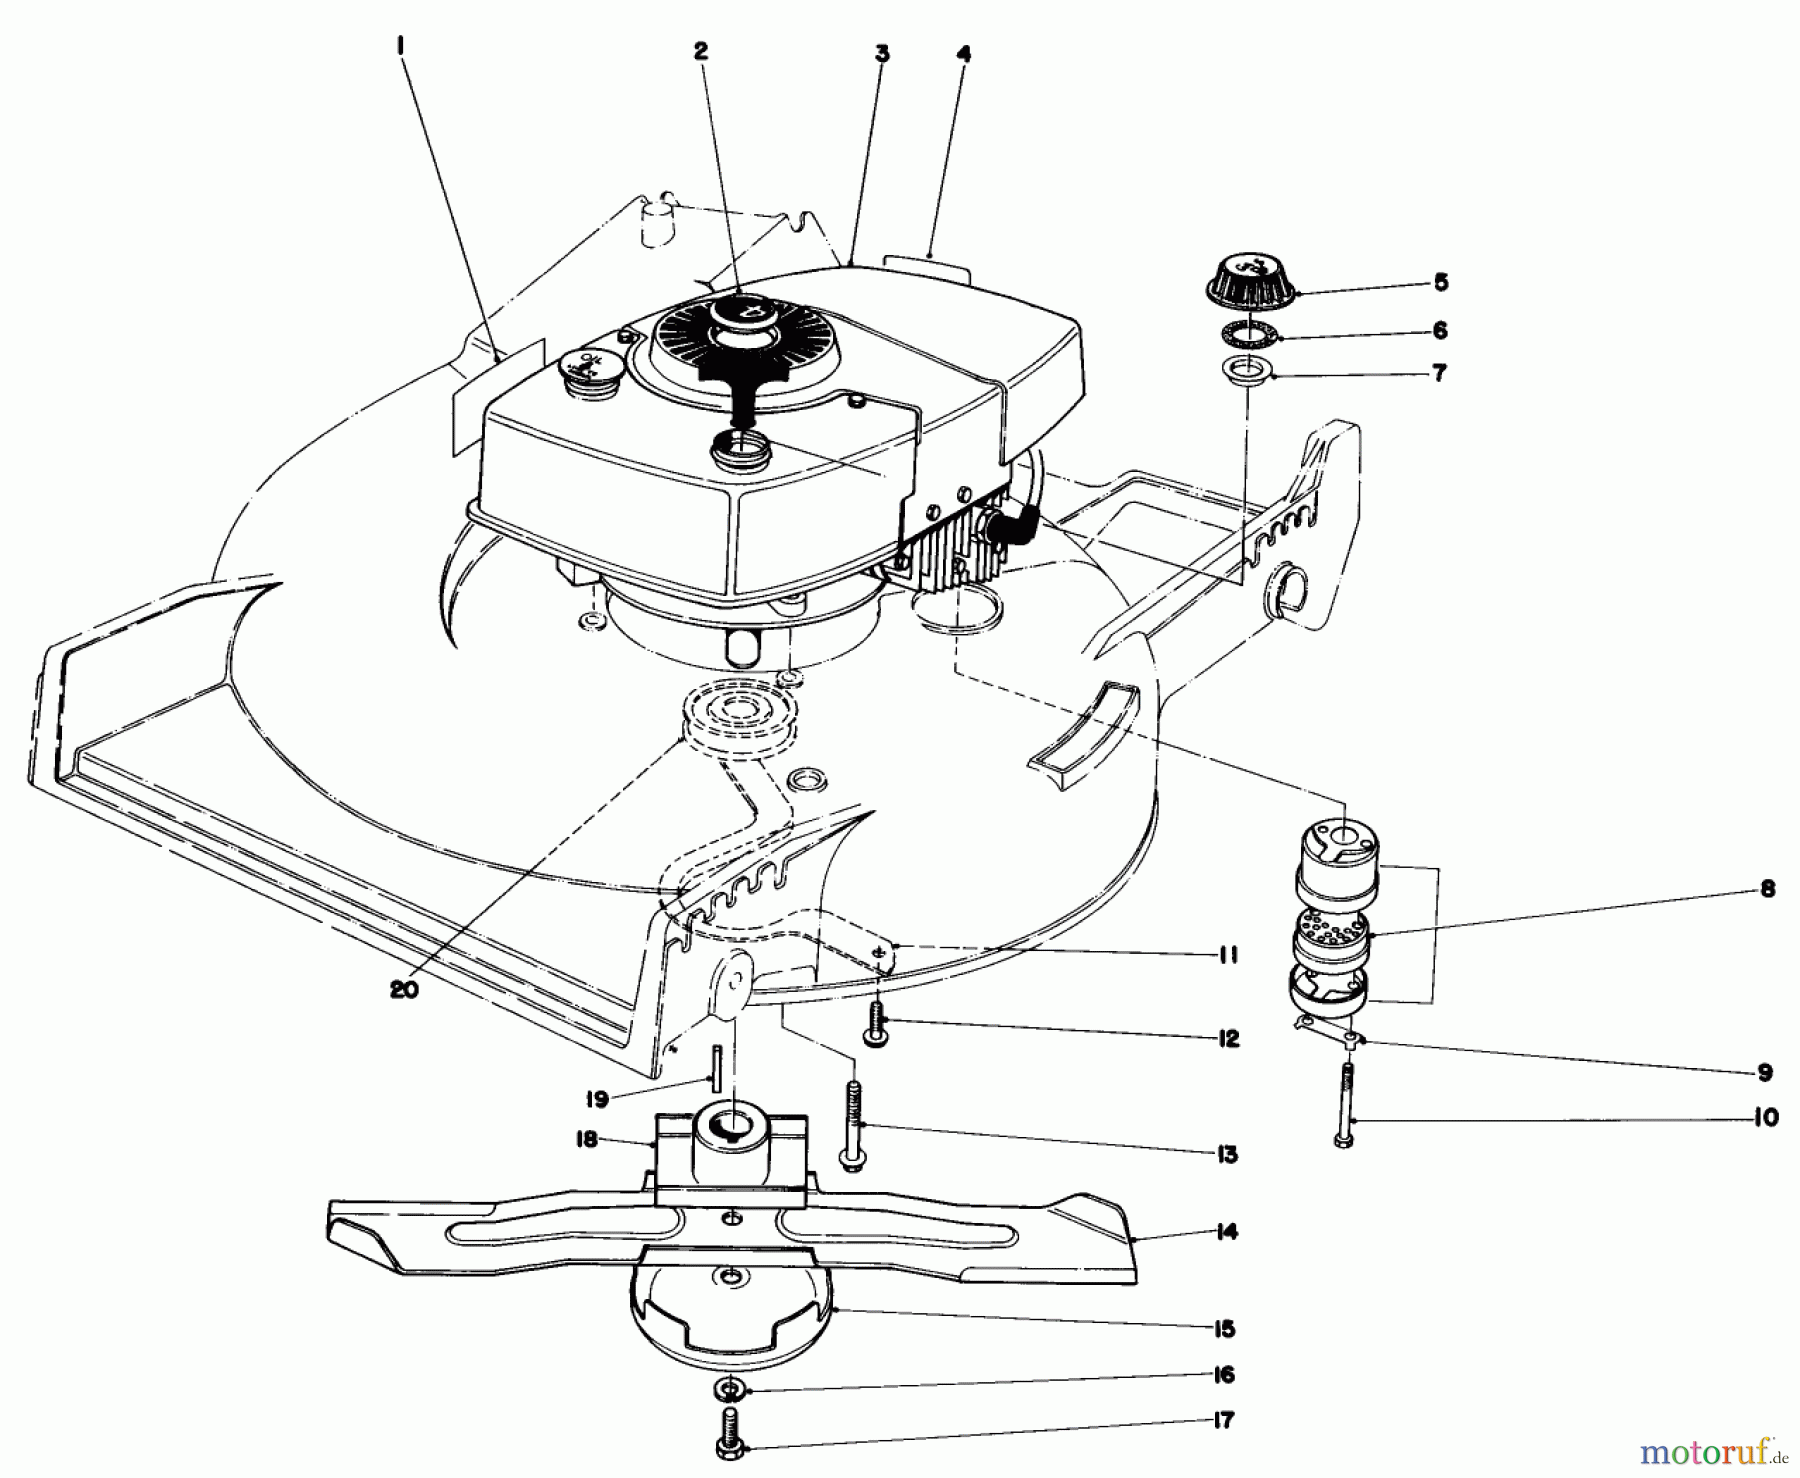  Toro Neu Mowers, Walk-Behind Seite 1 20705 - Toro Lawnmower, 1979 (9000001-9999999) ENGINE ASSEMBLY